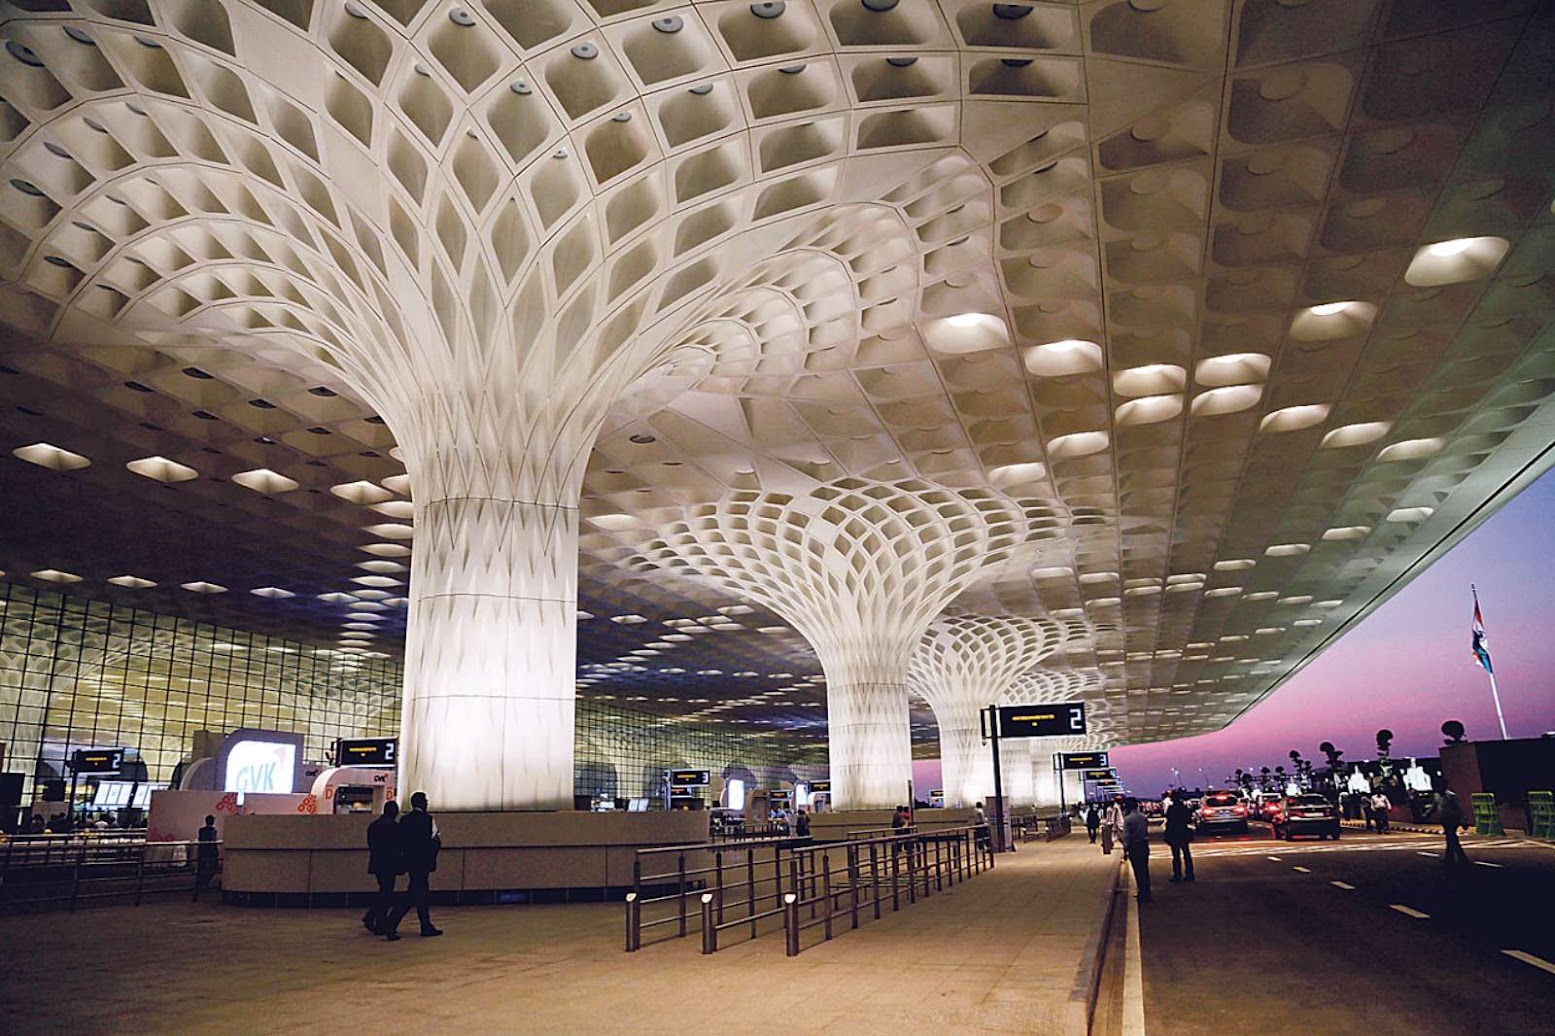 Mumbai, Maharashtra, India: [OPEN THE CHHATRAPATI SHIVAJI INTERNATIONAL AIRPORT BY SOM]